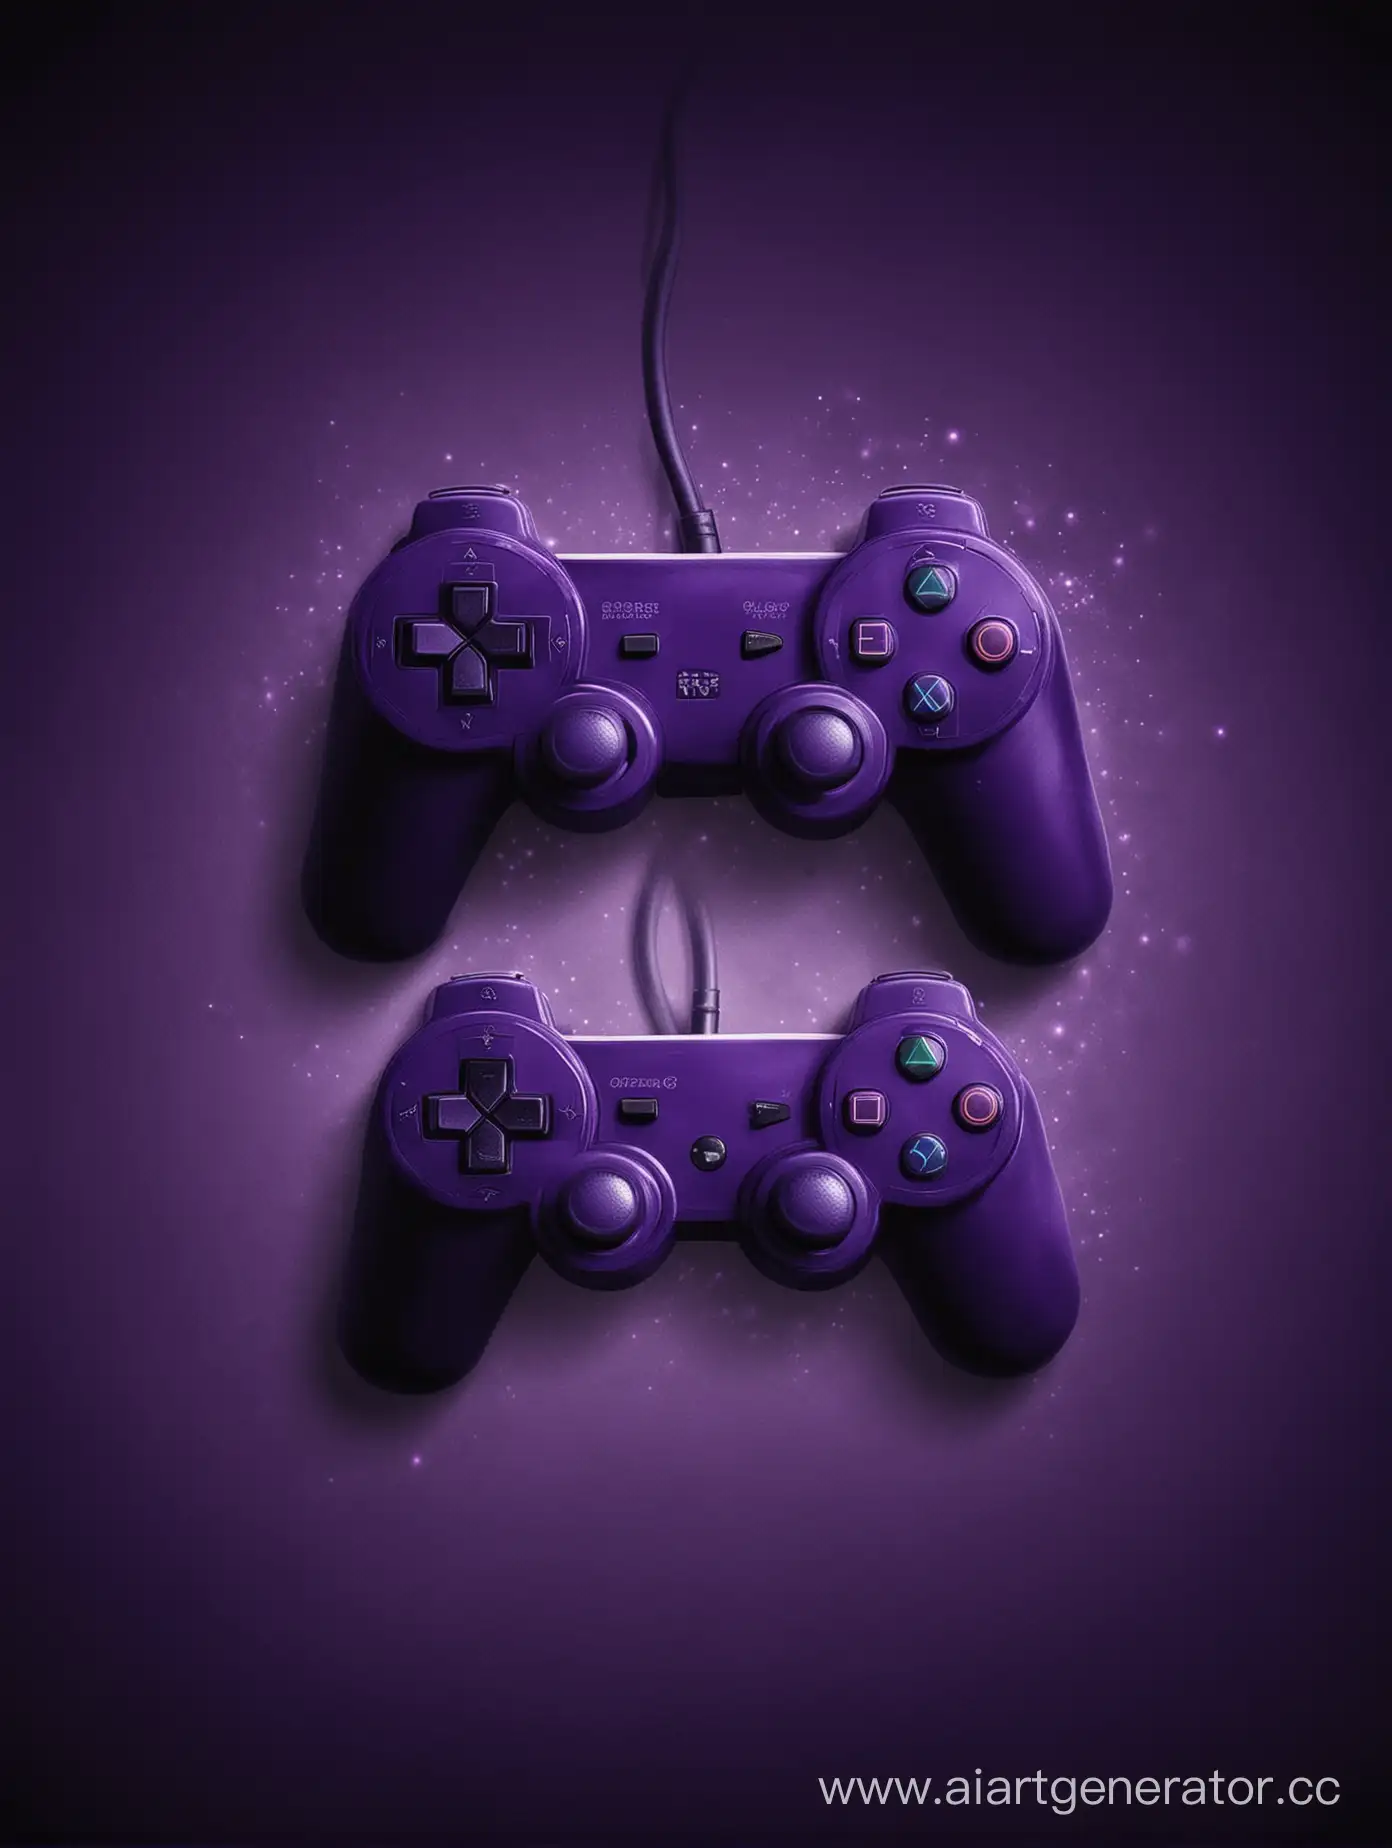 Картинка в темно-фиолетовых цветах компьютерные игры